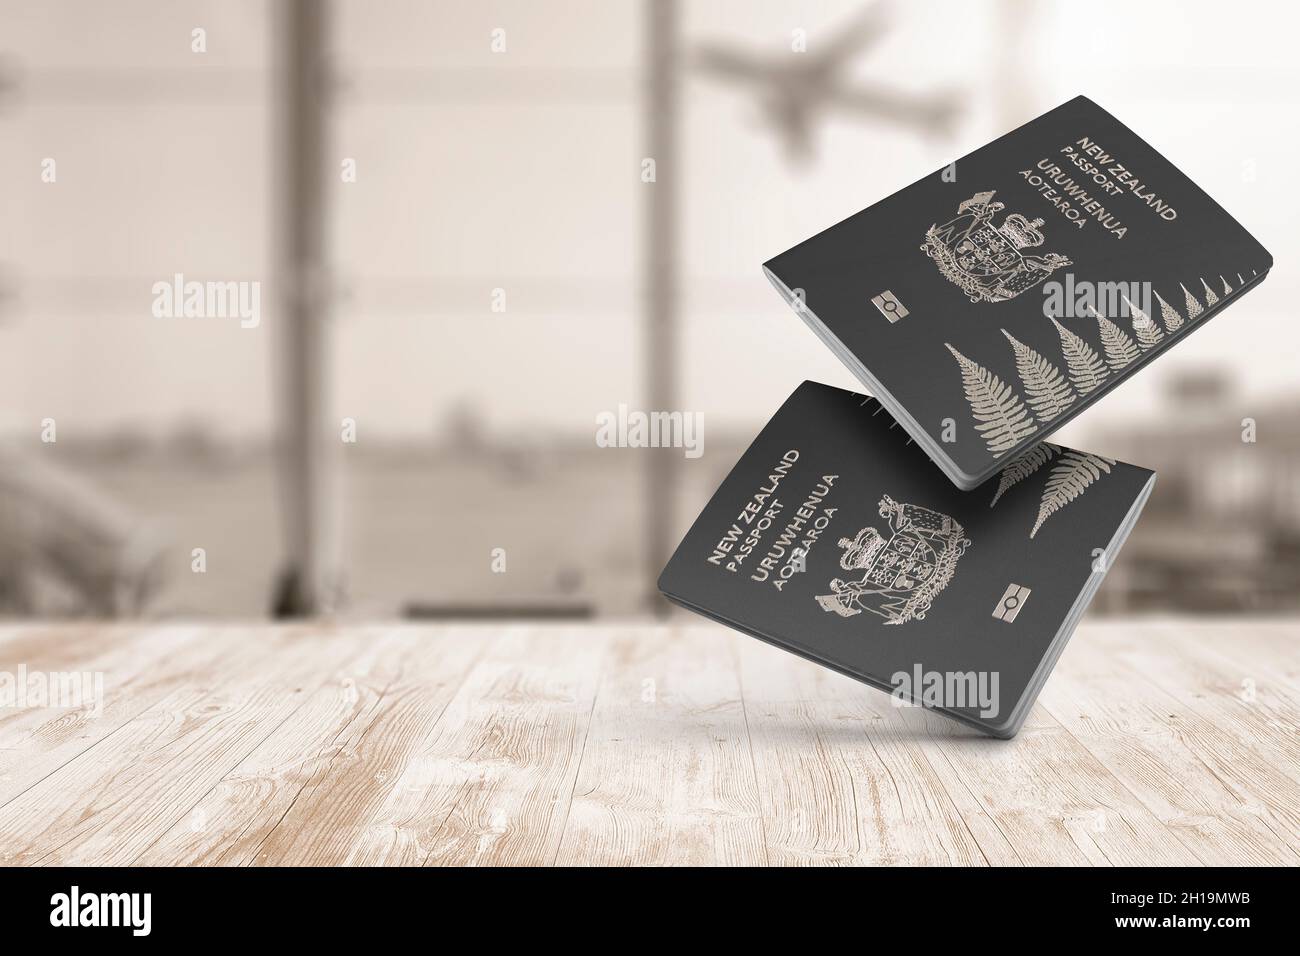 Neuseeländischer Pass auf dunkler Holzplatte, Top Shot, Citizenship by Investment, in der Luft schwebender Pass Stockfoto